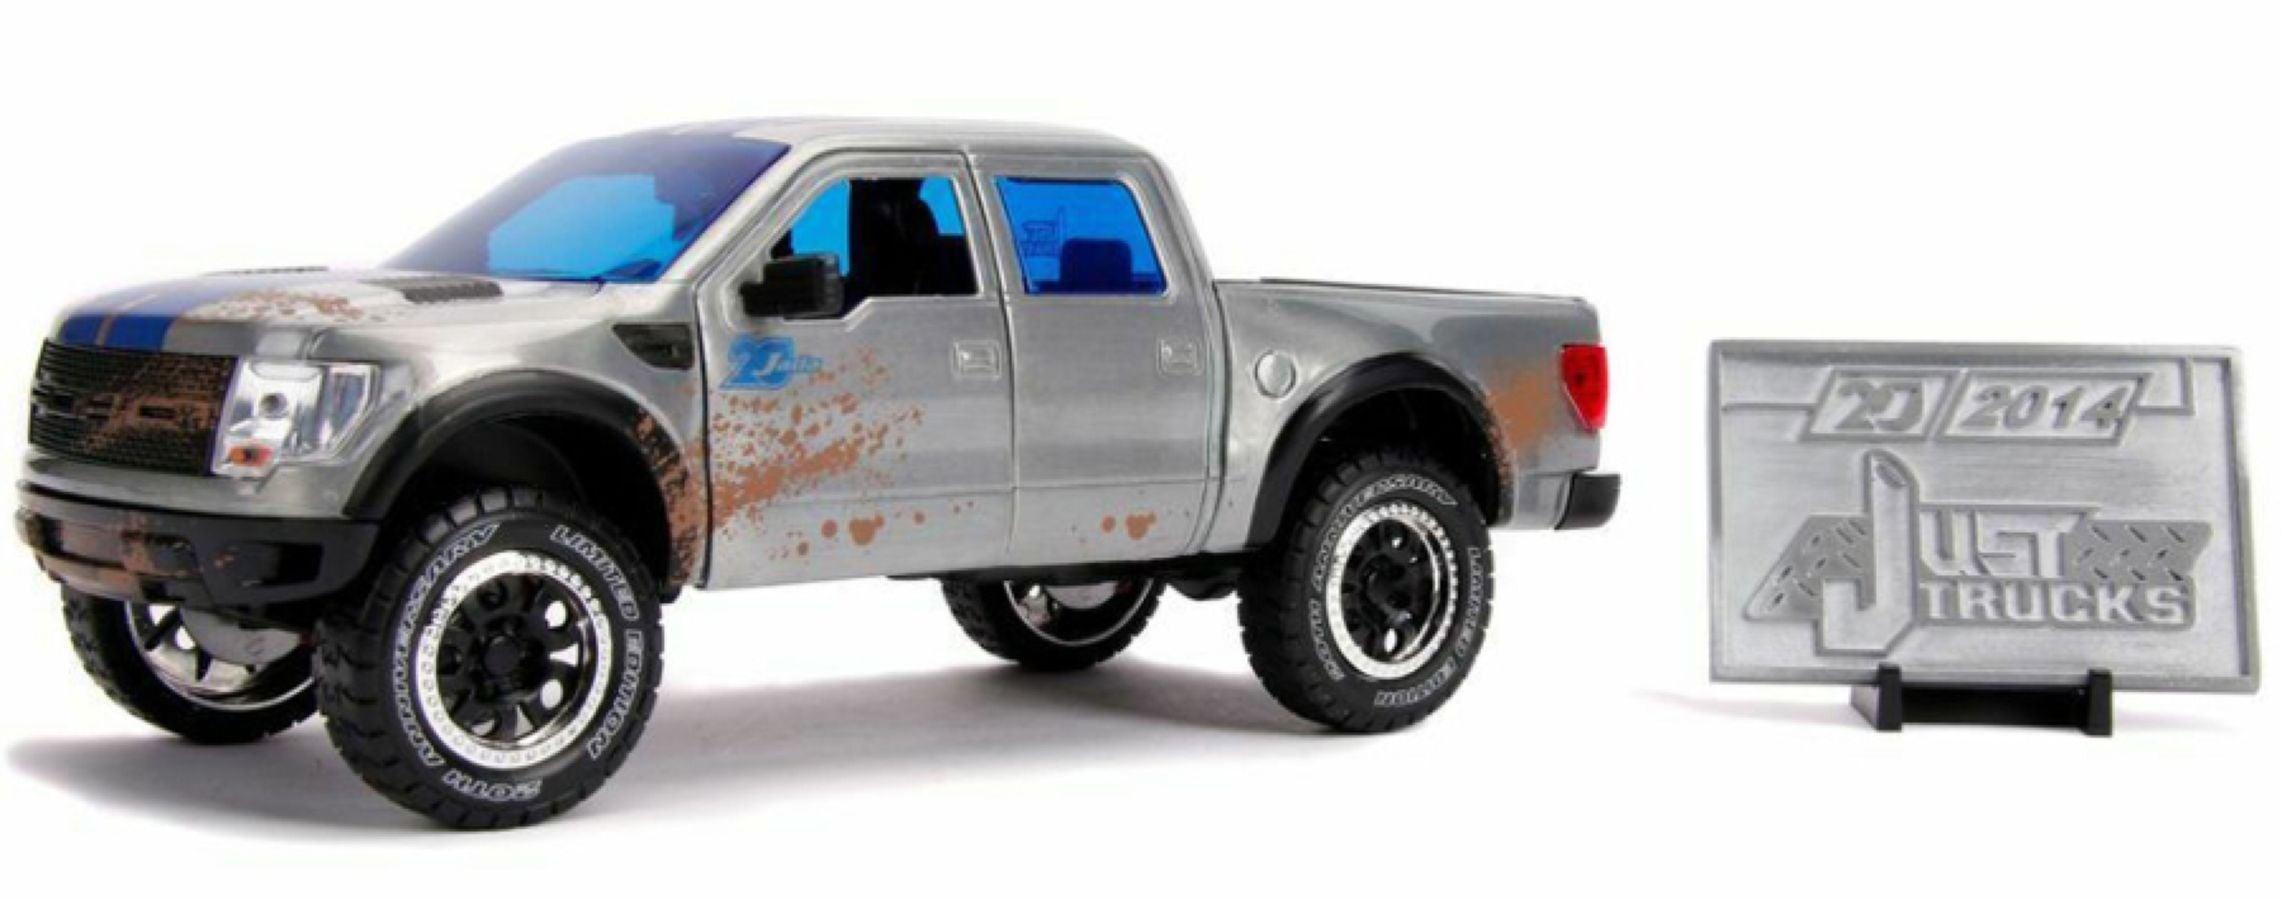 JAD31086 Just Trucks - 2011 Ford F-150 SVT Raptor 1:24 Scale - Jada Toys - Titan Pop Culture